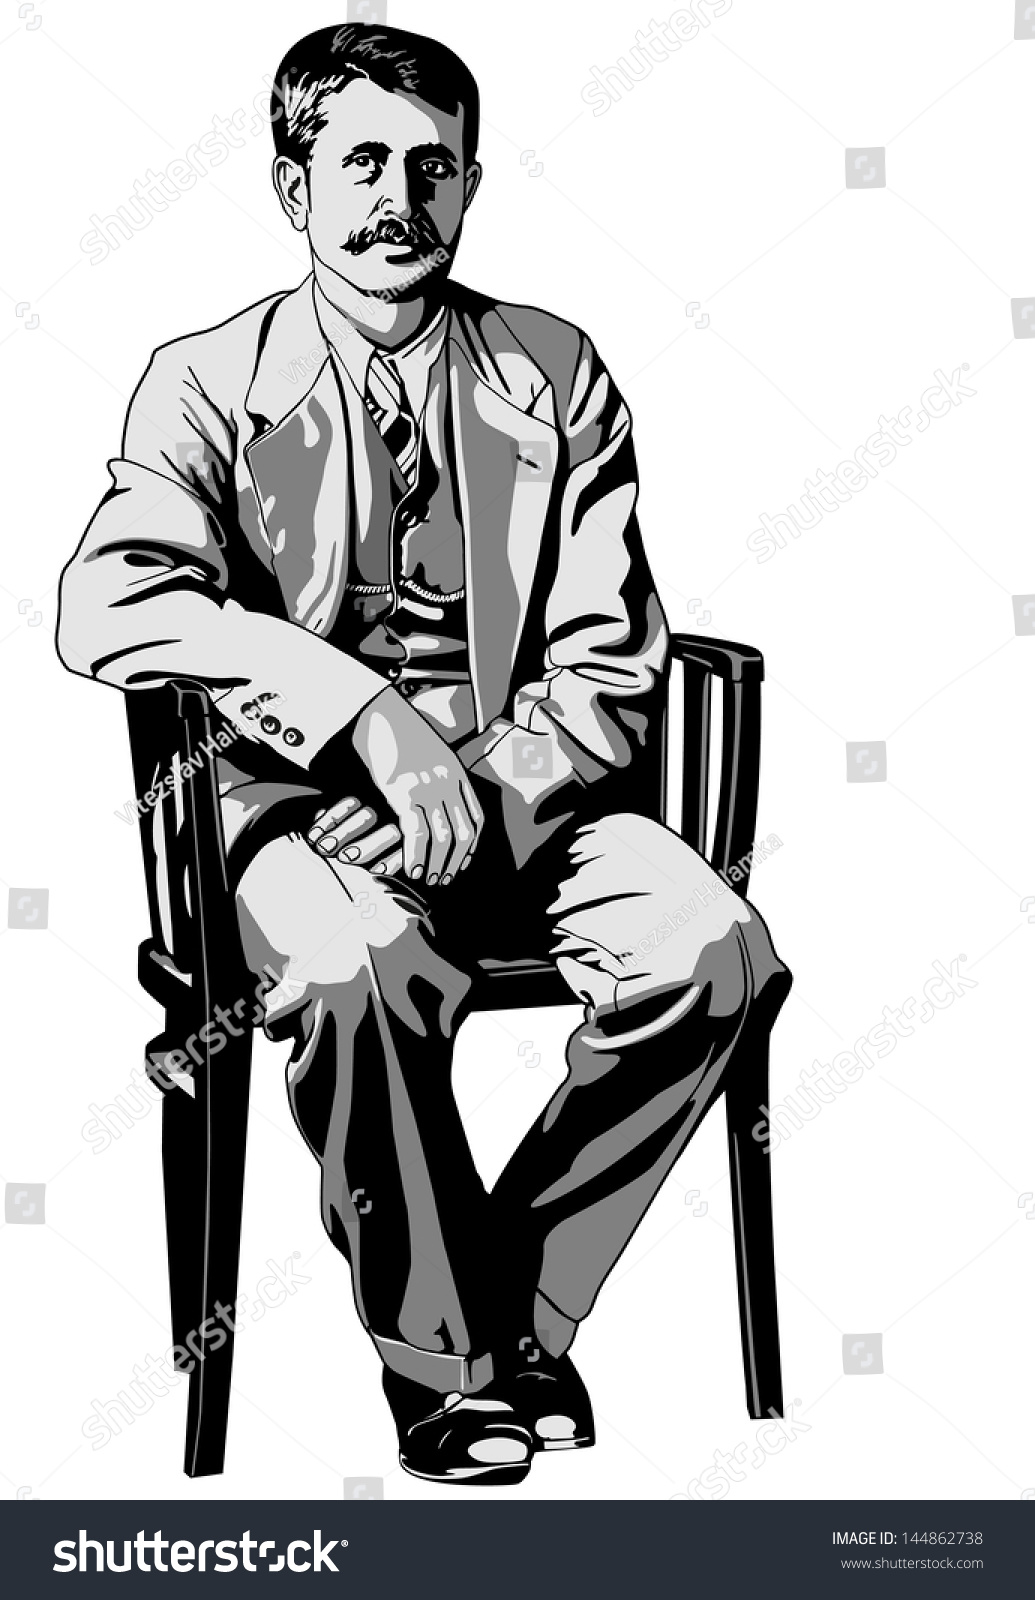 Фигура сидит на кресле